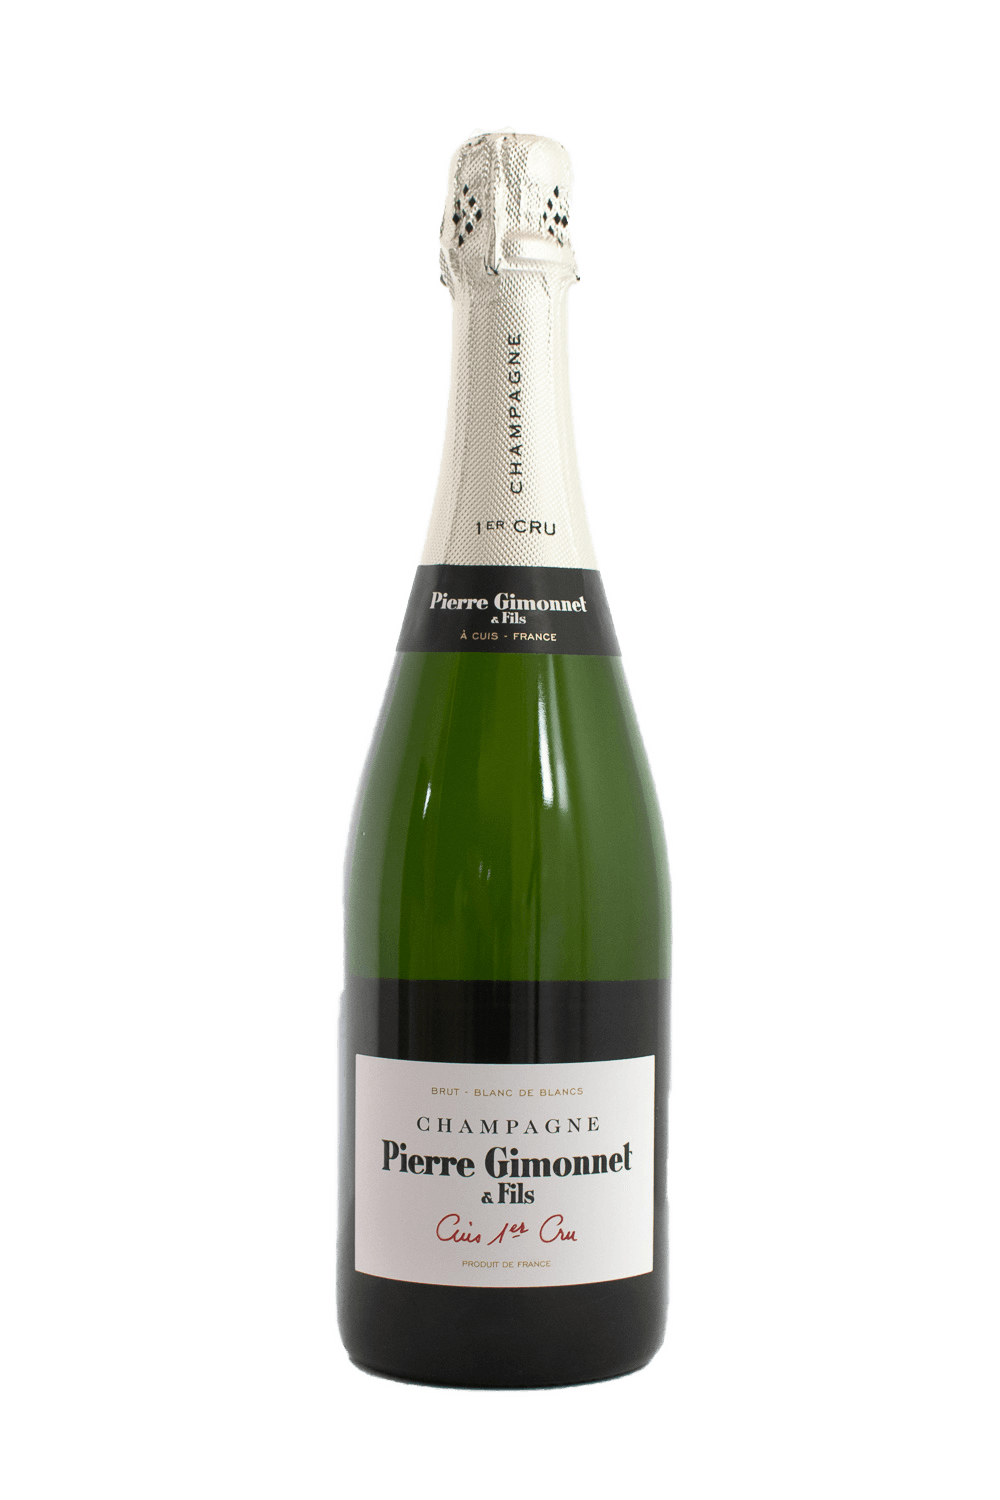 Pierre Gimonnet & Fils Cuis Ler Cru - The Blend Wines